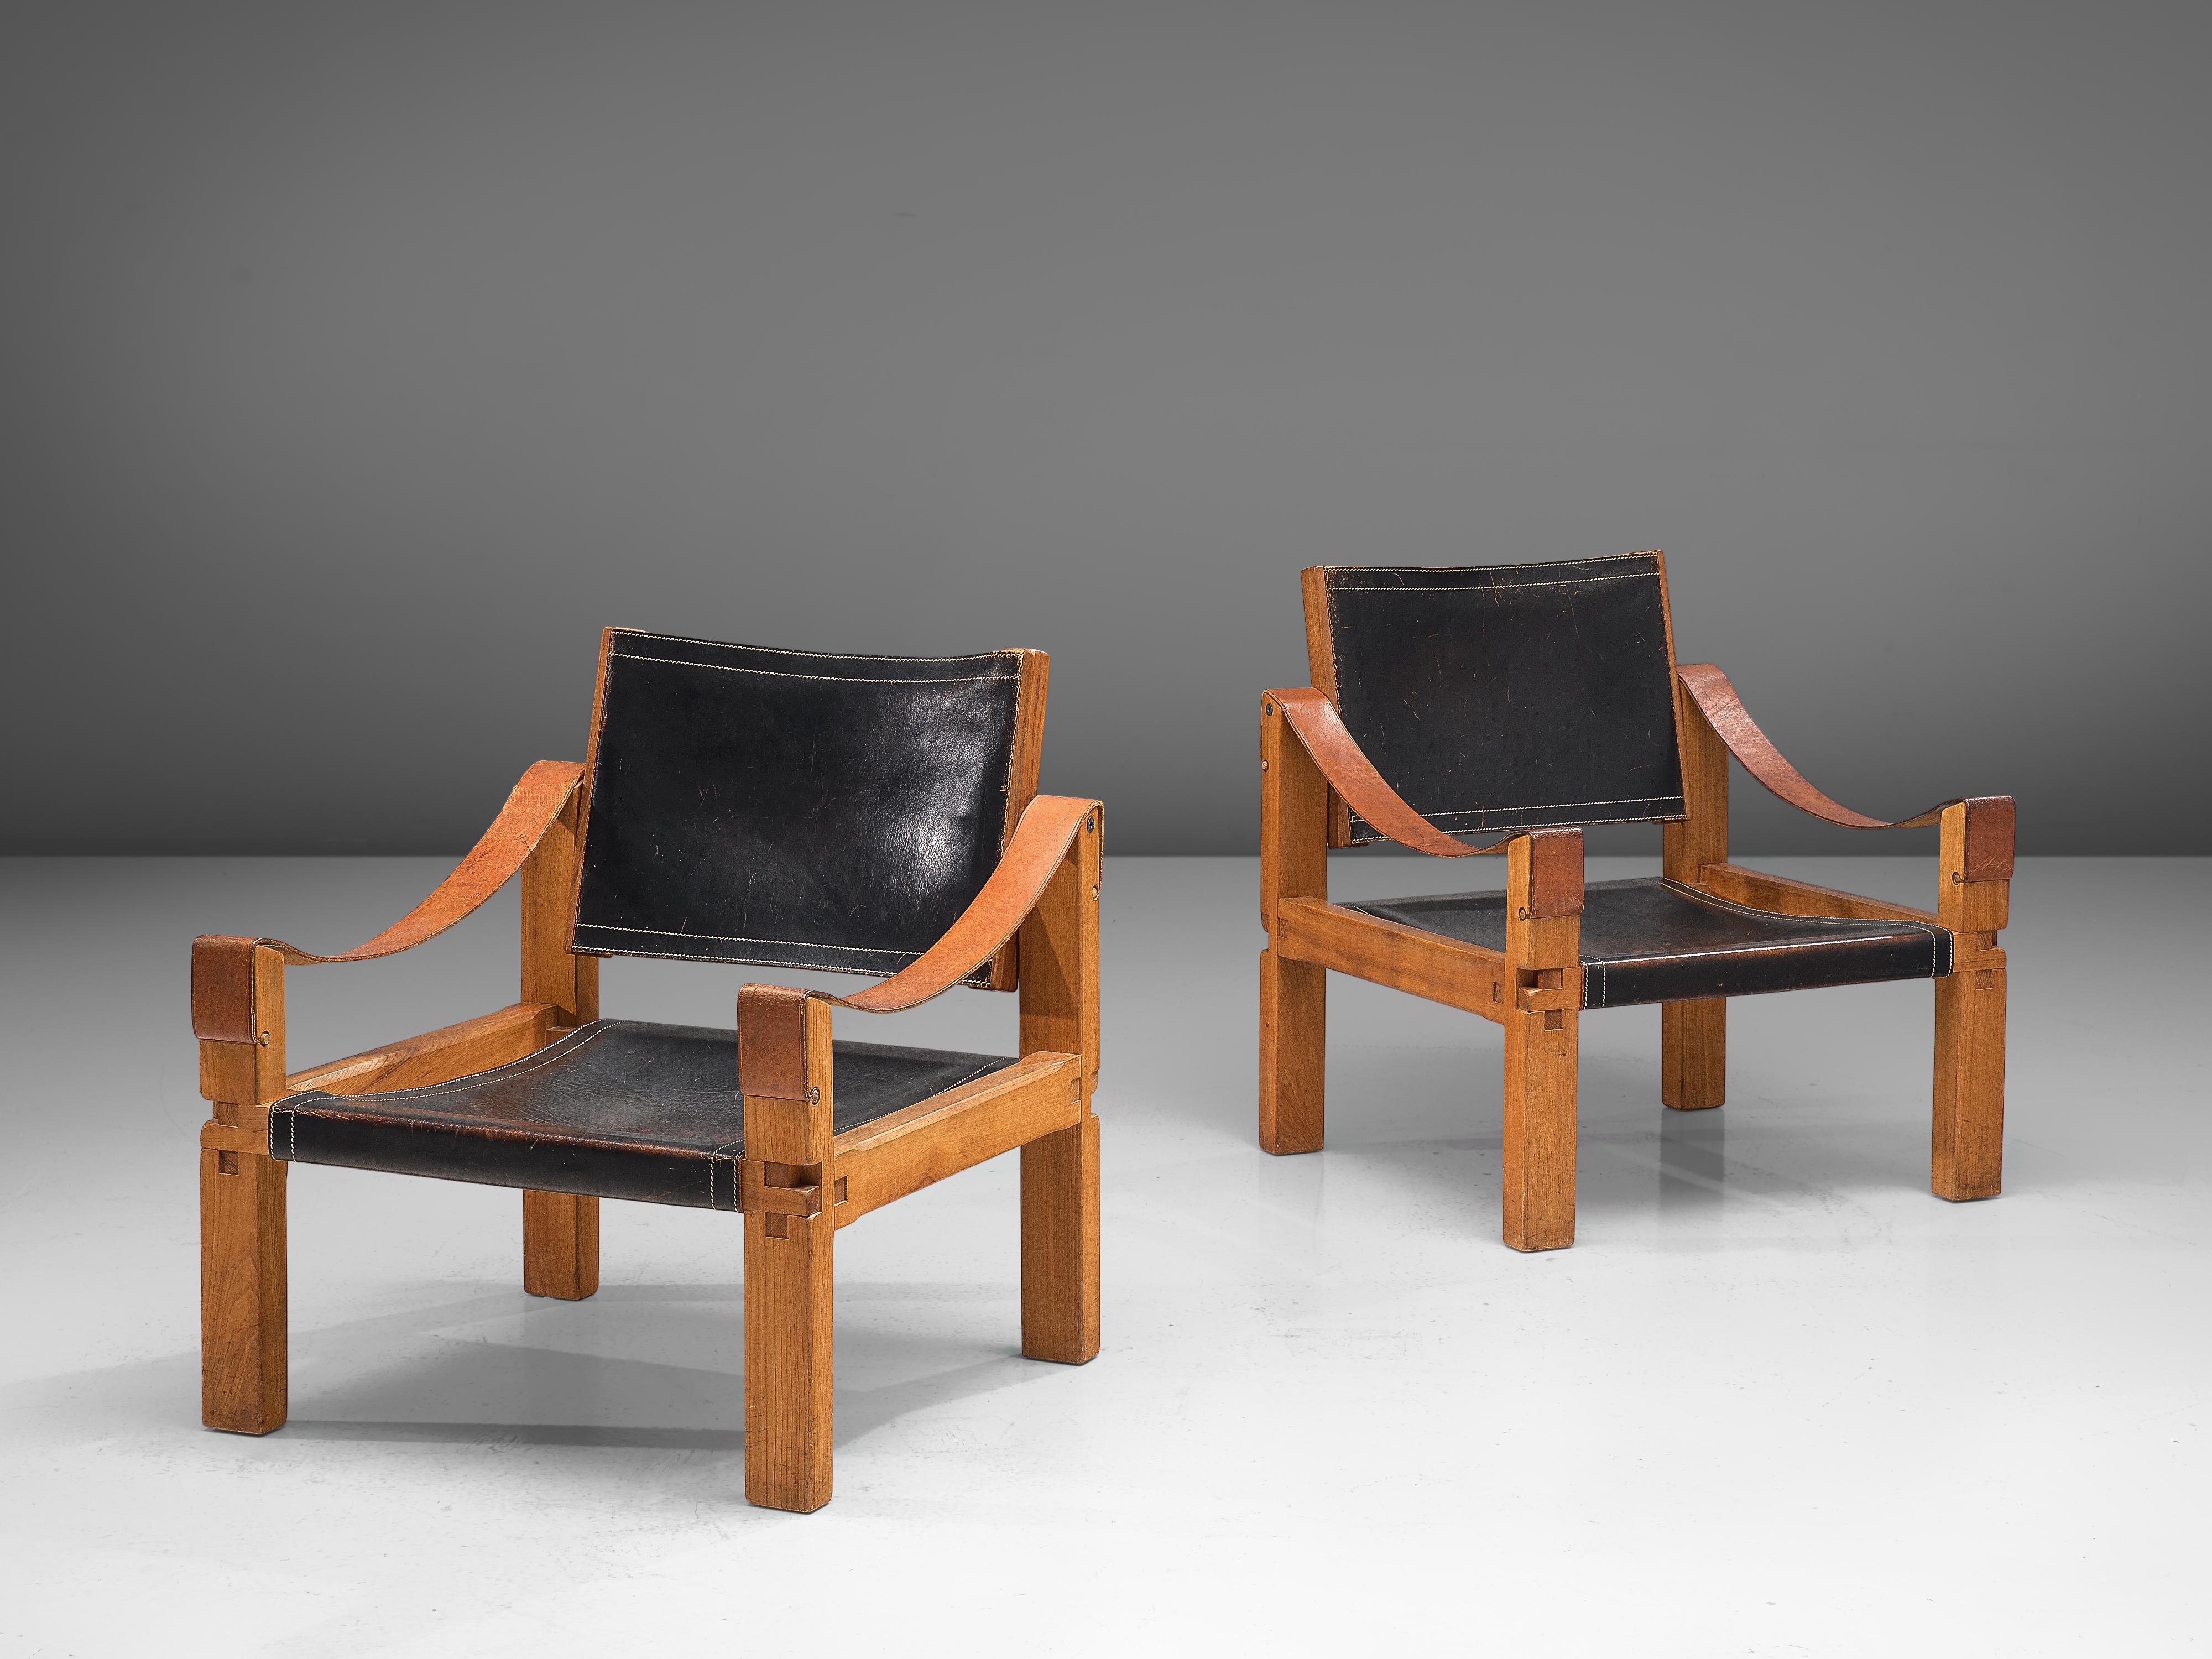 Pierre CIRCA, paire de fauteuils modèle 'S10X', orme, cuir, France, vers 1964.

Ce modèle est une première édition, créée selon la méthodologie artisanale originale de Pierre Chapo. Ces fauteuils confortables en bois d'orme massif et en cuir noir de